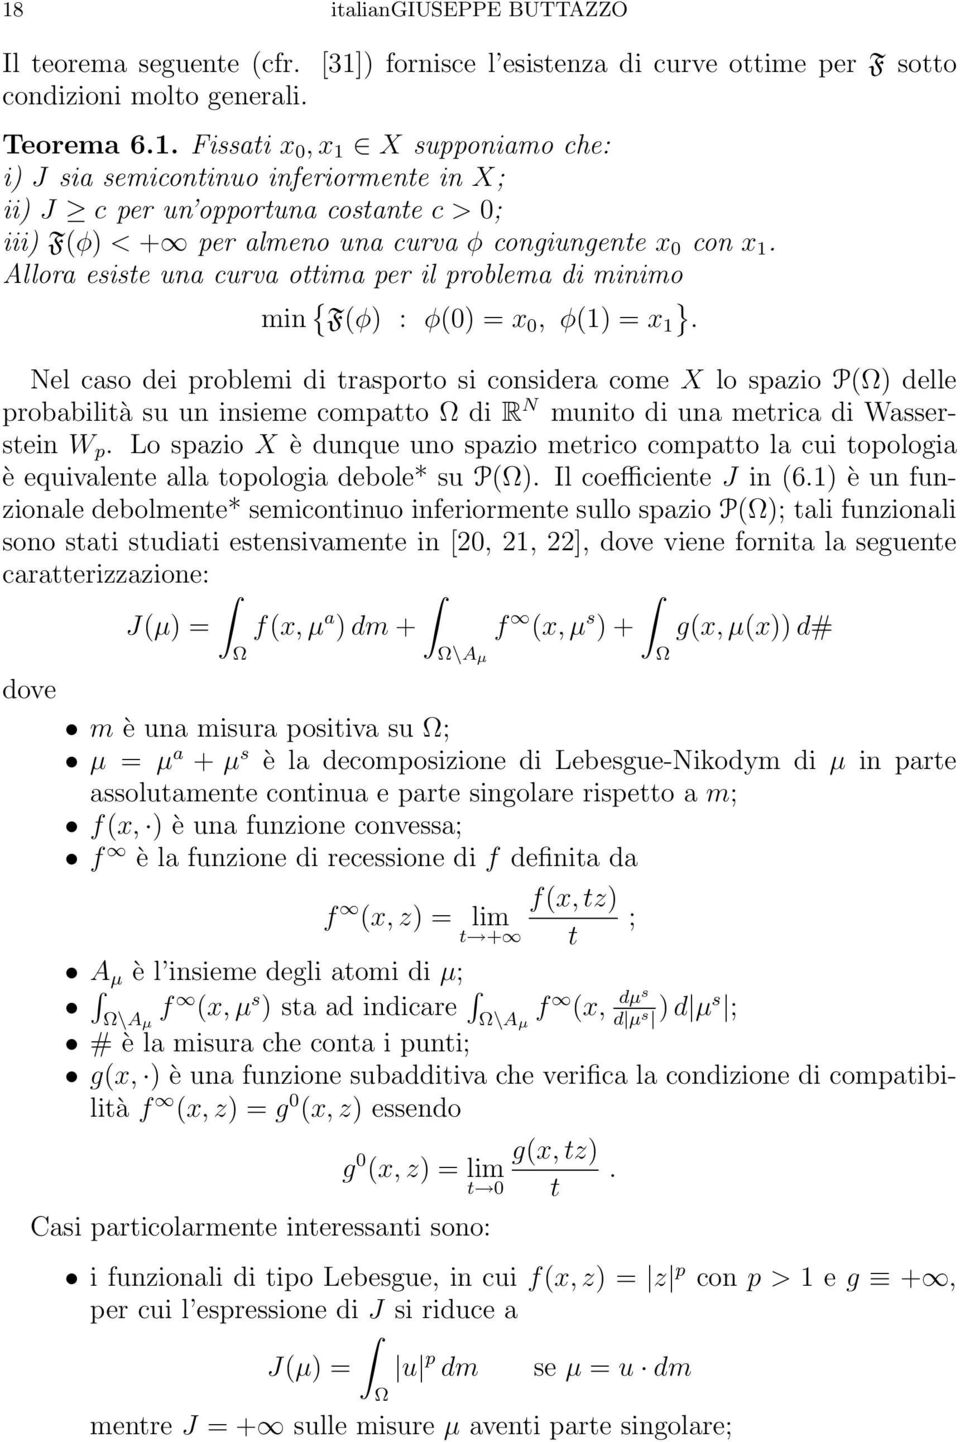 Nel caso dei problemi di trasporto si considera come X lo spazio P(Ω) delle probabilità su un insieme compatto Ω di R N munito di una metrica di Wasserstein W p.